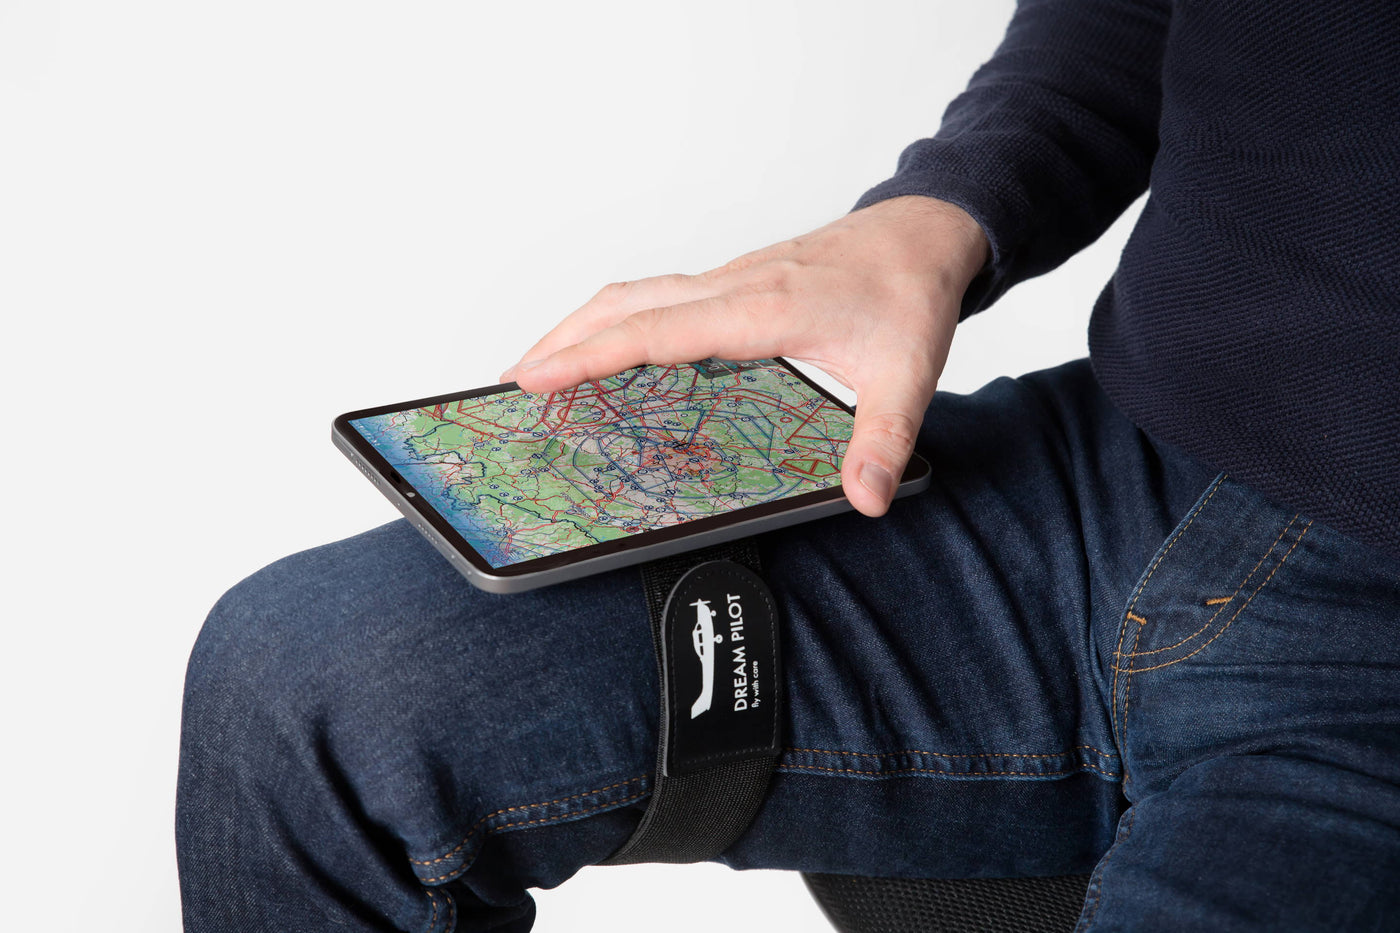 Universal Piloten Kniebrett für iPhone, iPad, Android Telefone und Tablets